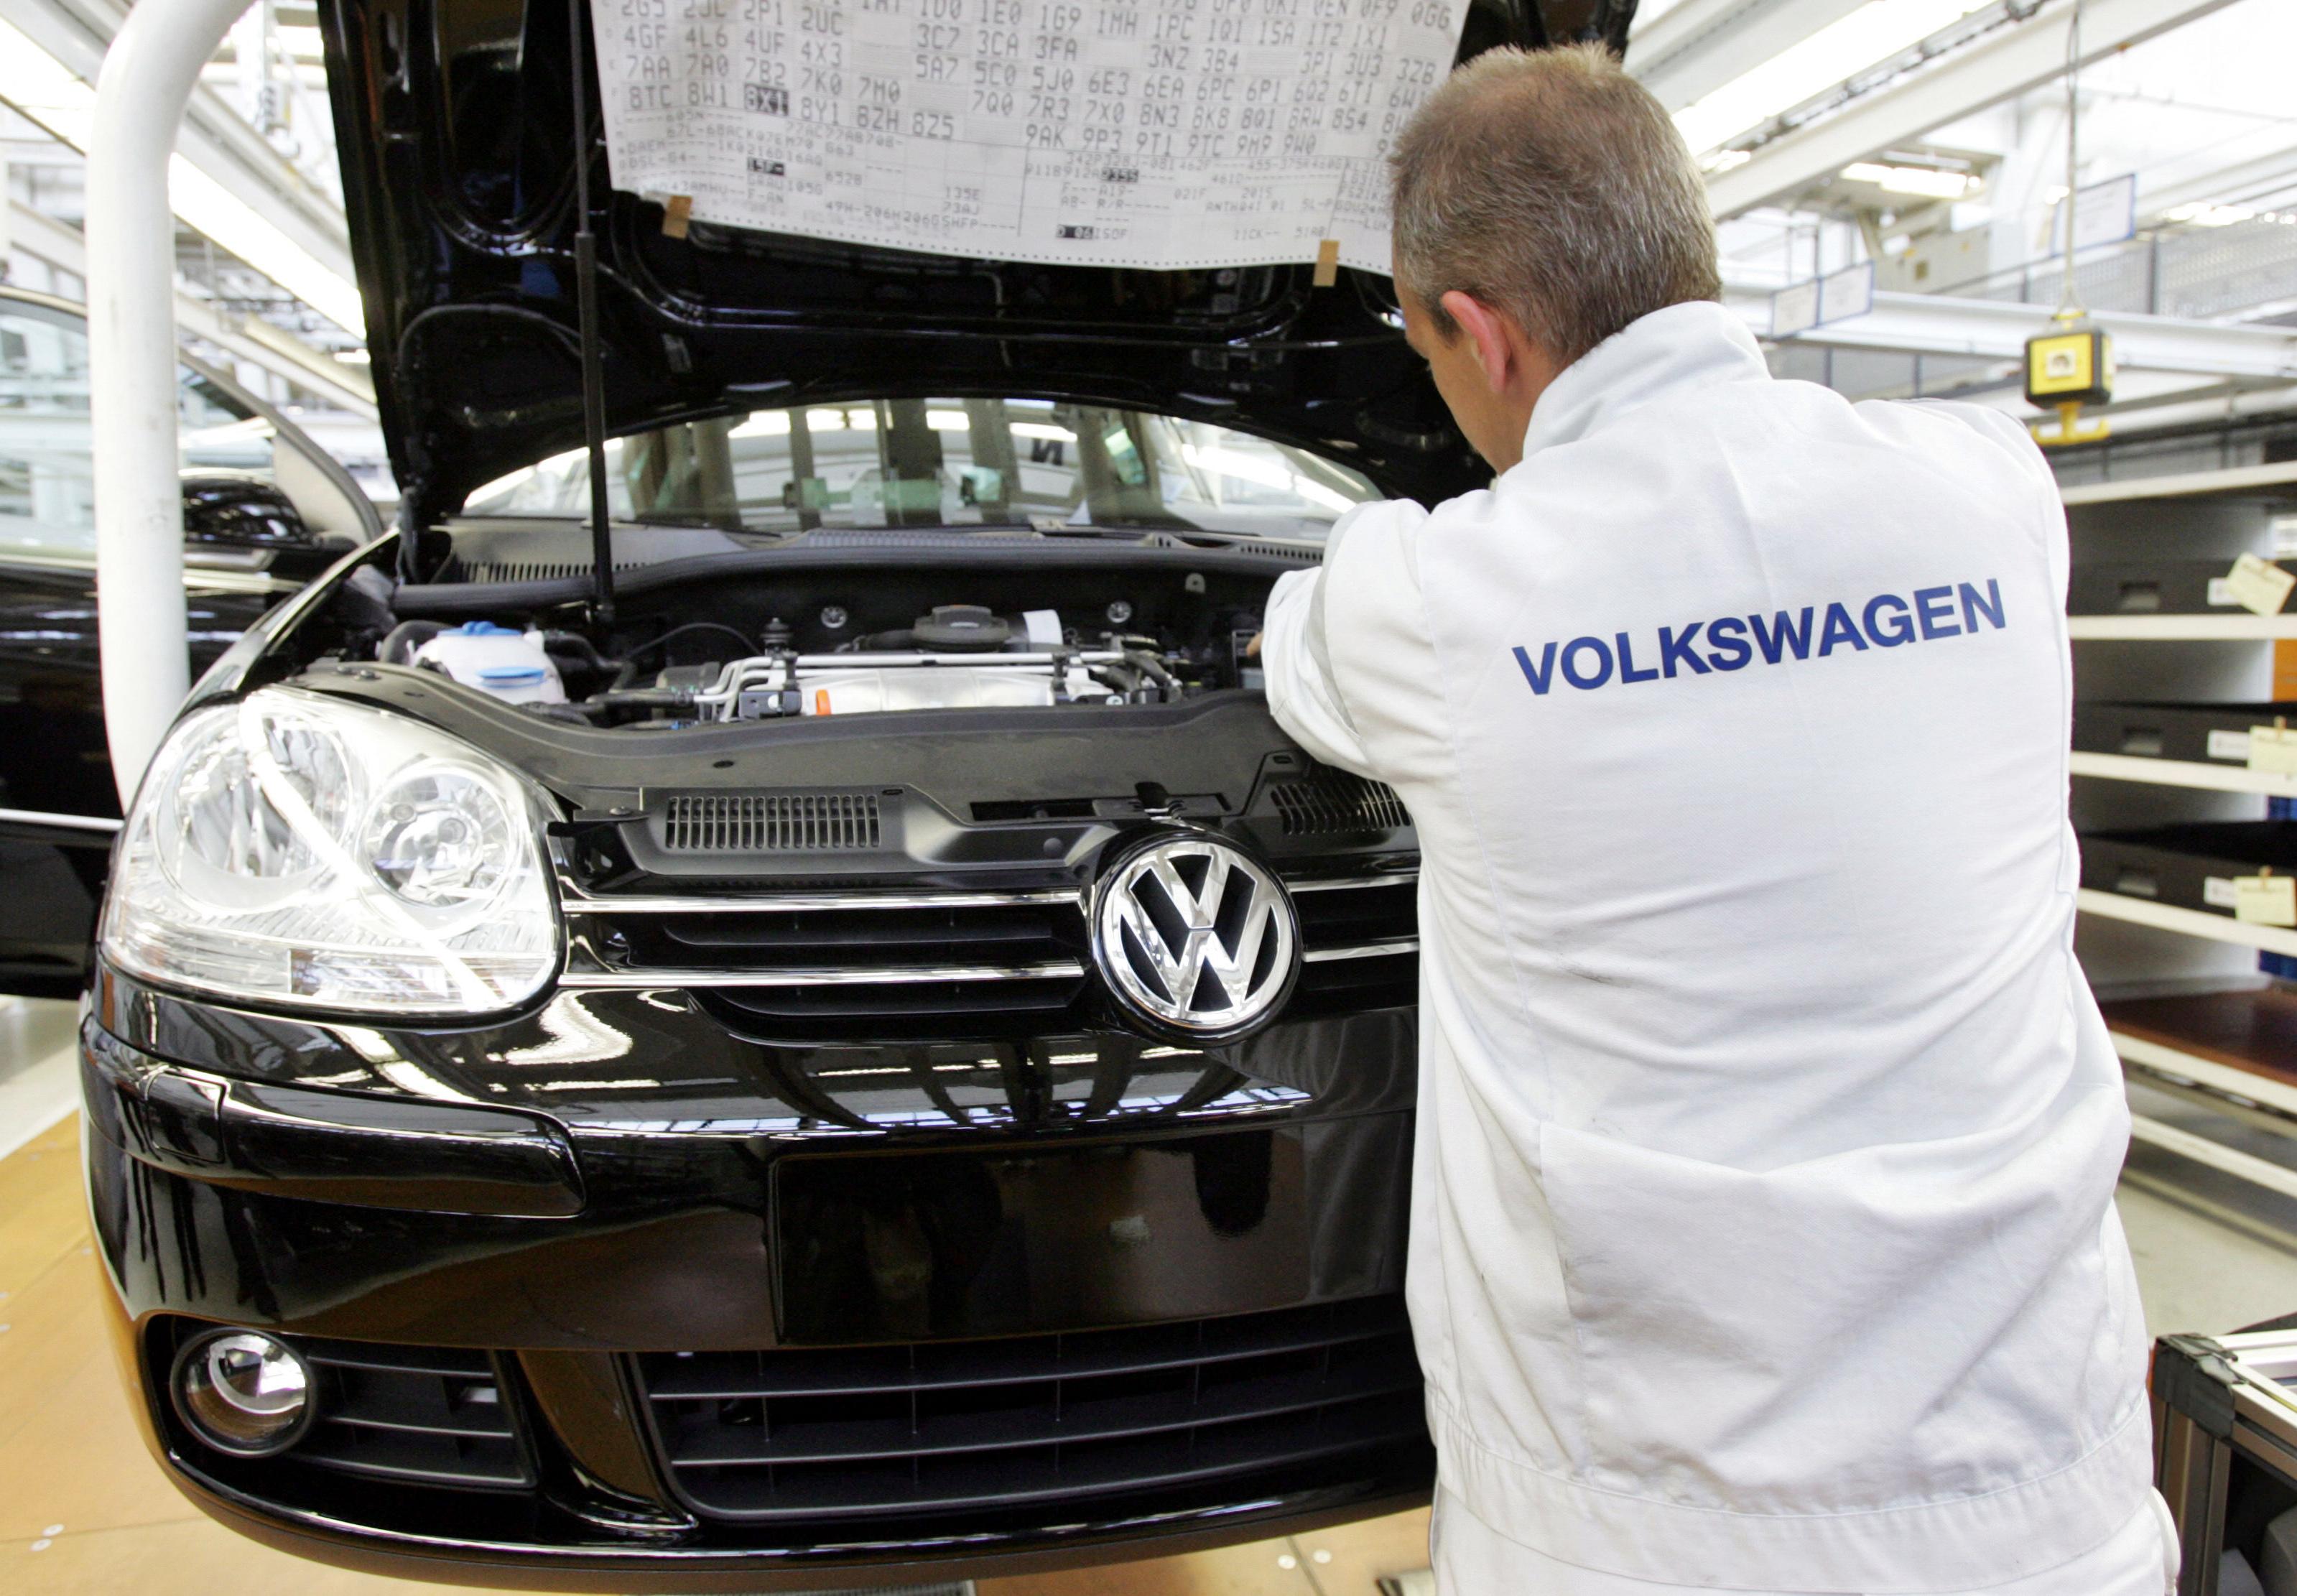 Volkswagen ska uppgradera alla bilar som är berörda av utsläppsfusket, meddelade den nye VD:n den 6 oktober. (Foto: John Macdougall/AFP/Getty Image)